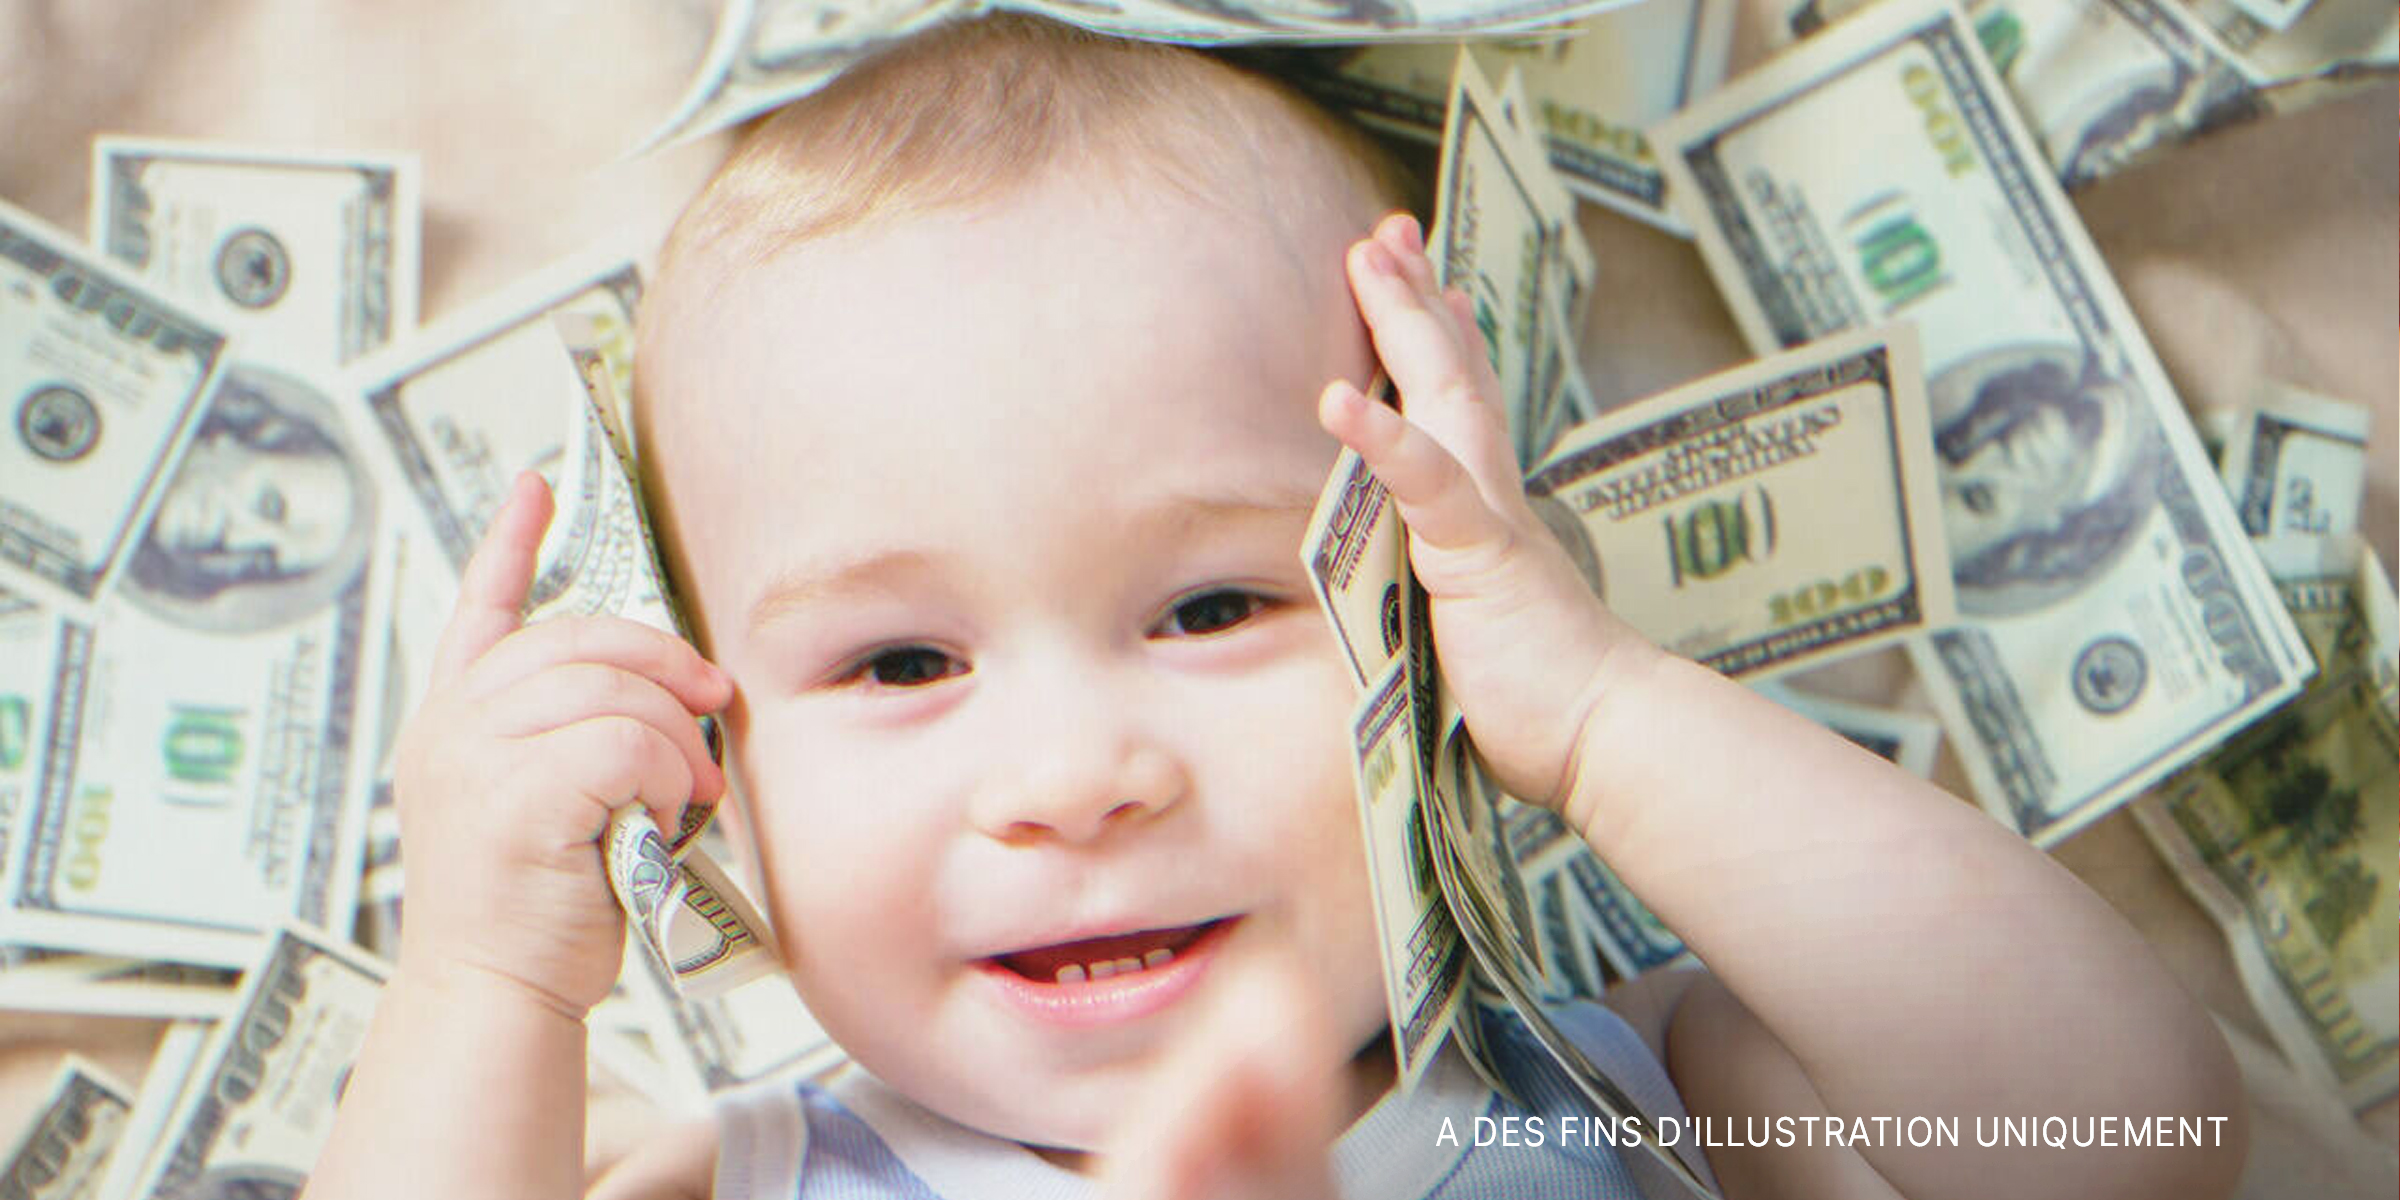 Bébé souriant. | Source : Shutterstock